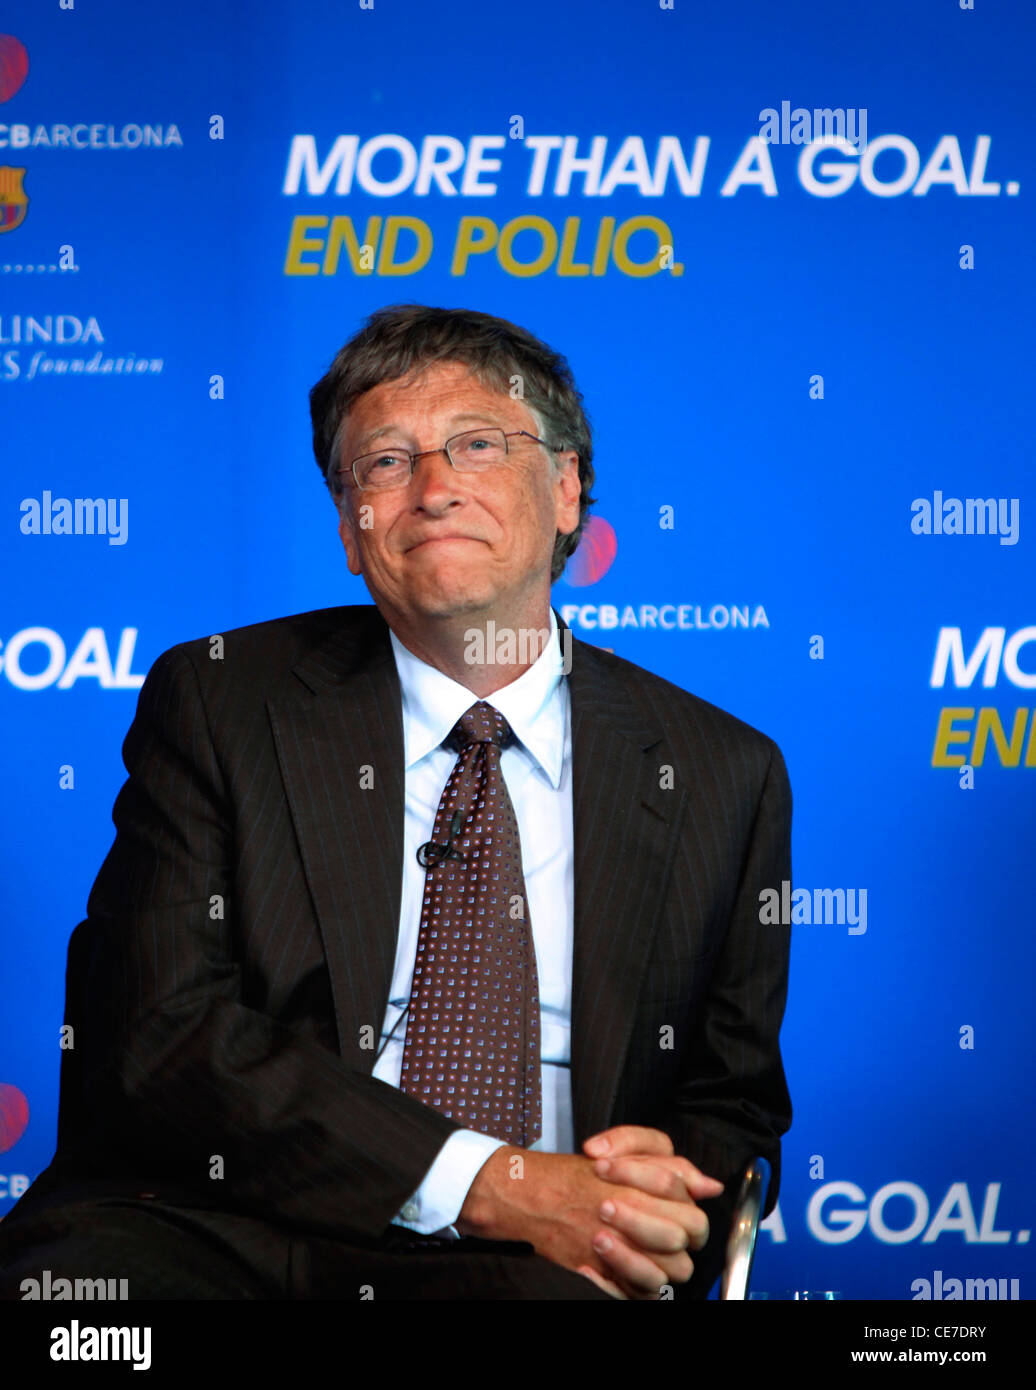 Bill Gates in occasione di una conferenza stampa annunciando Bill e Melinda Gates Foundation e FC Barcelona sforzo per aiutare a sradicare la poliomielite. Foto Stock